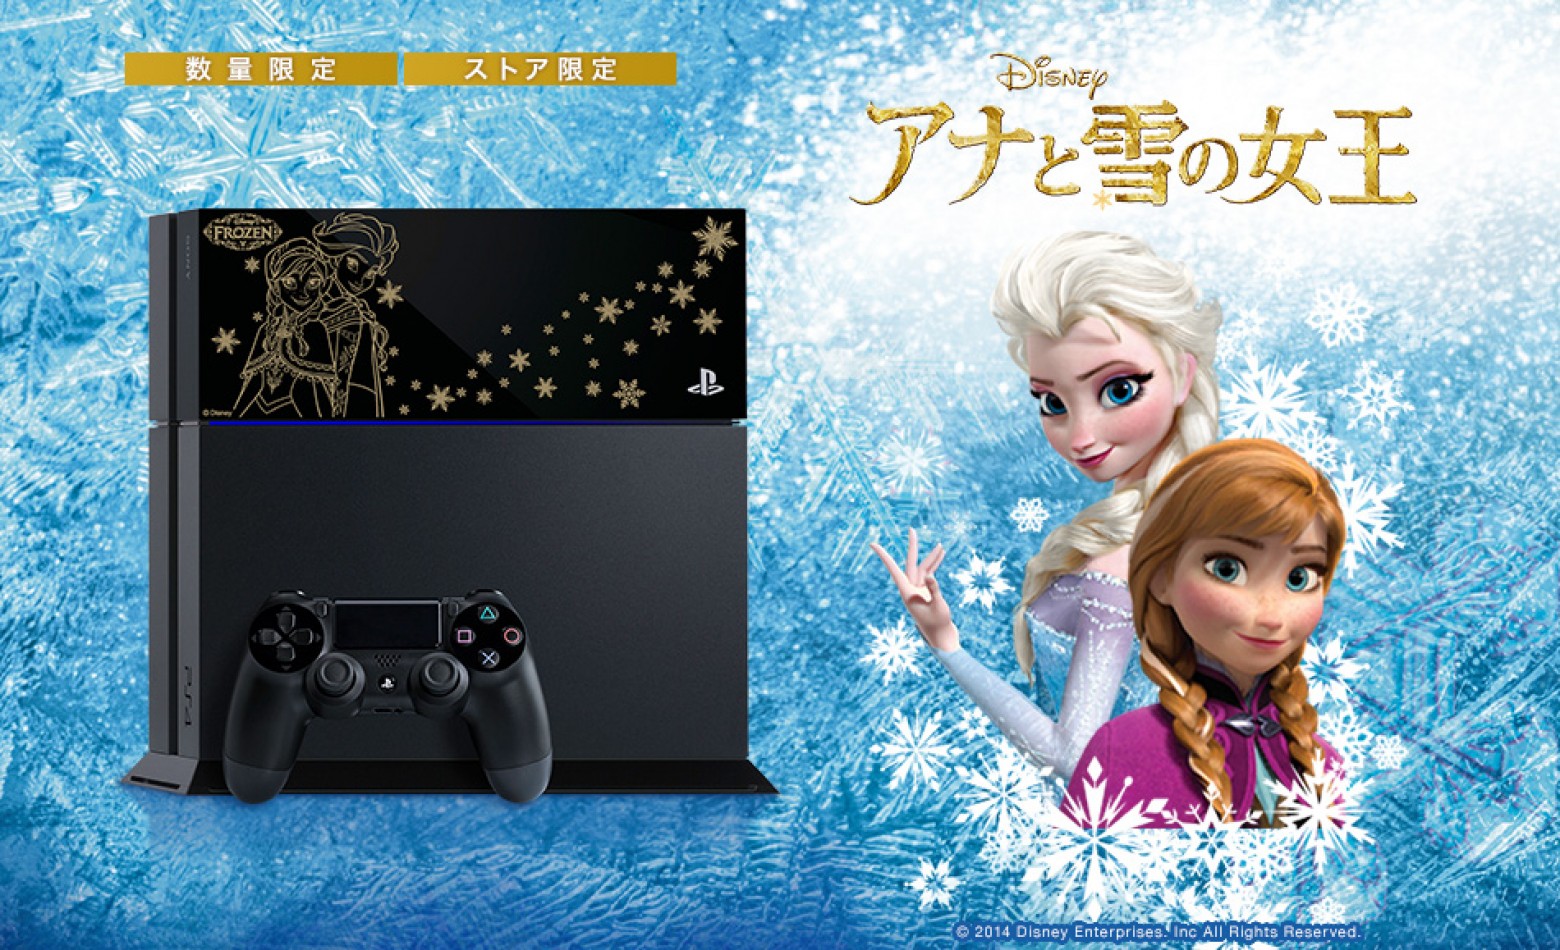 PlayStation 4 ganha edição especial de “Frozen”